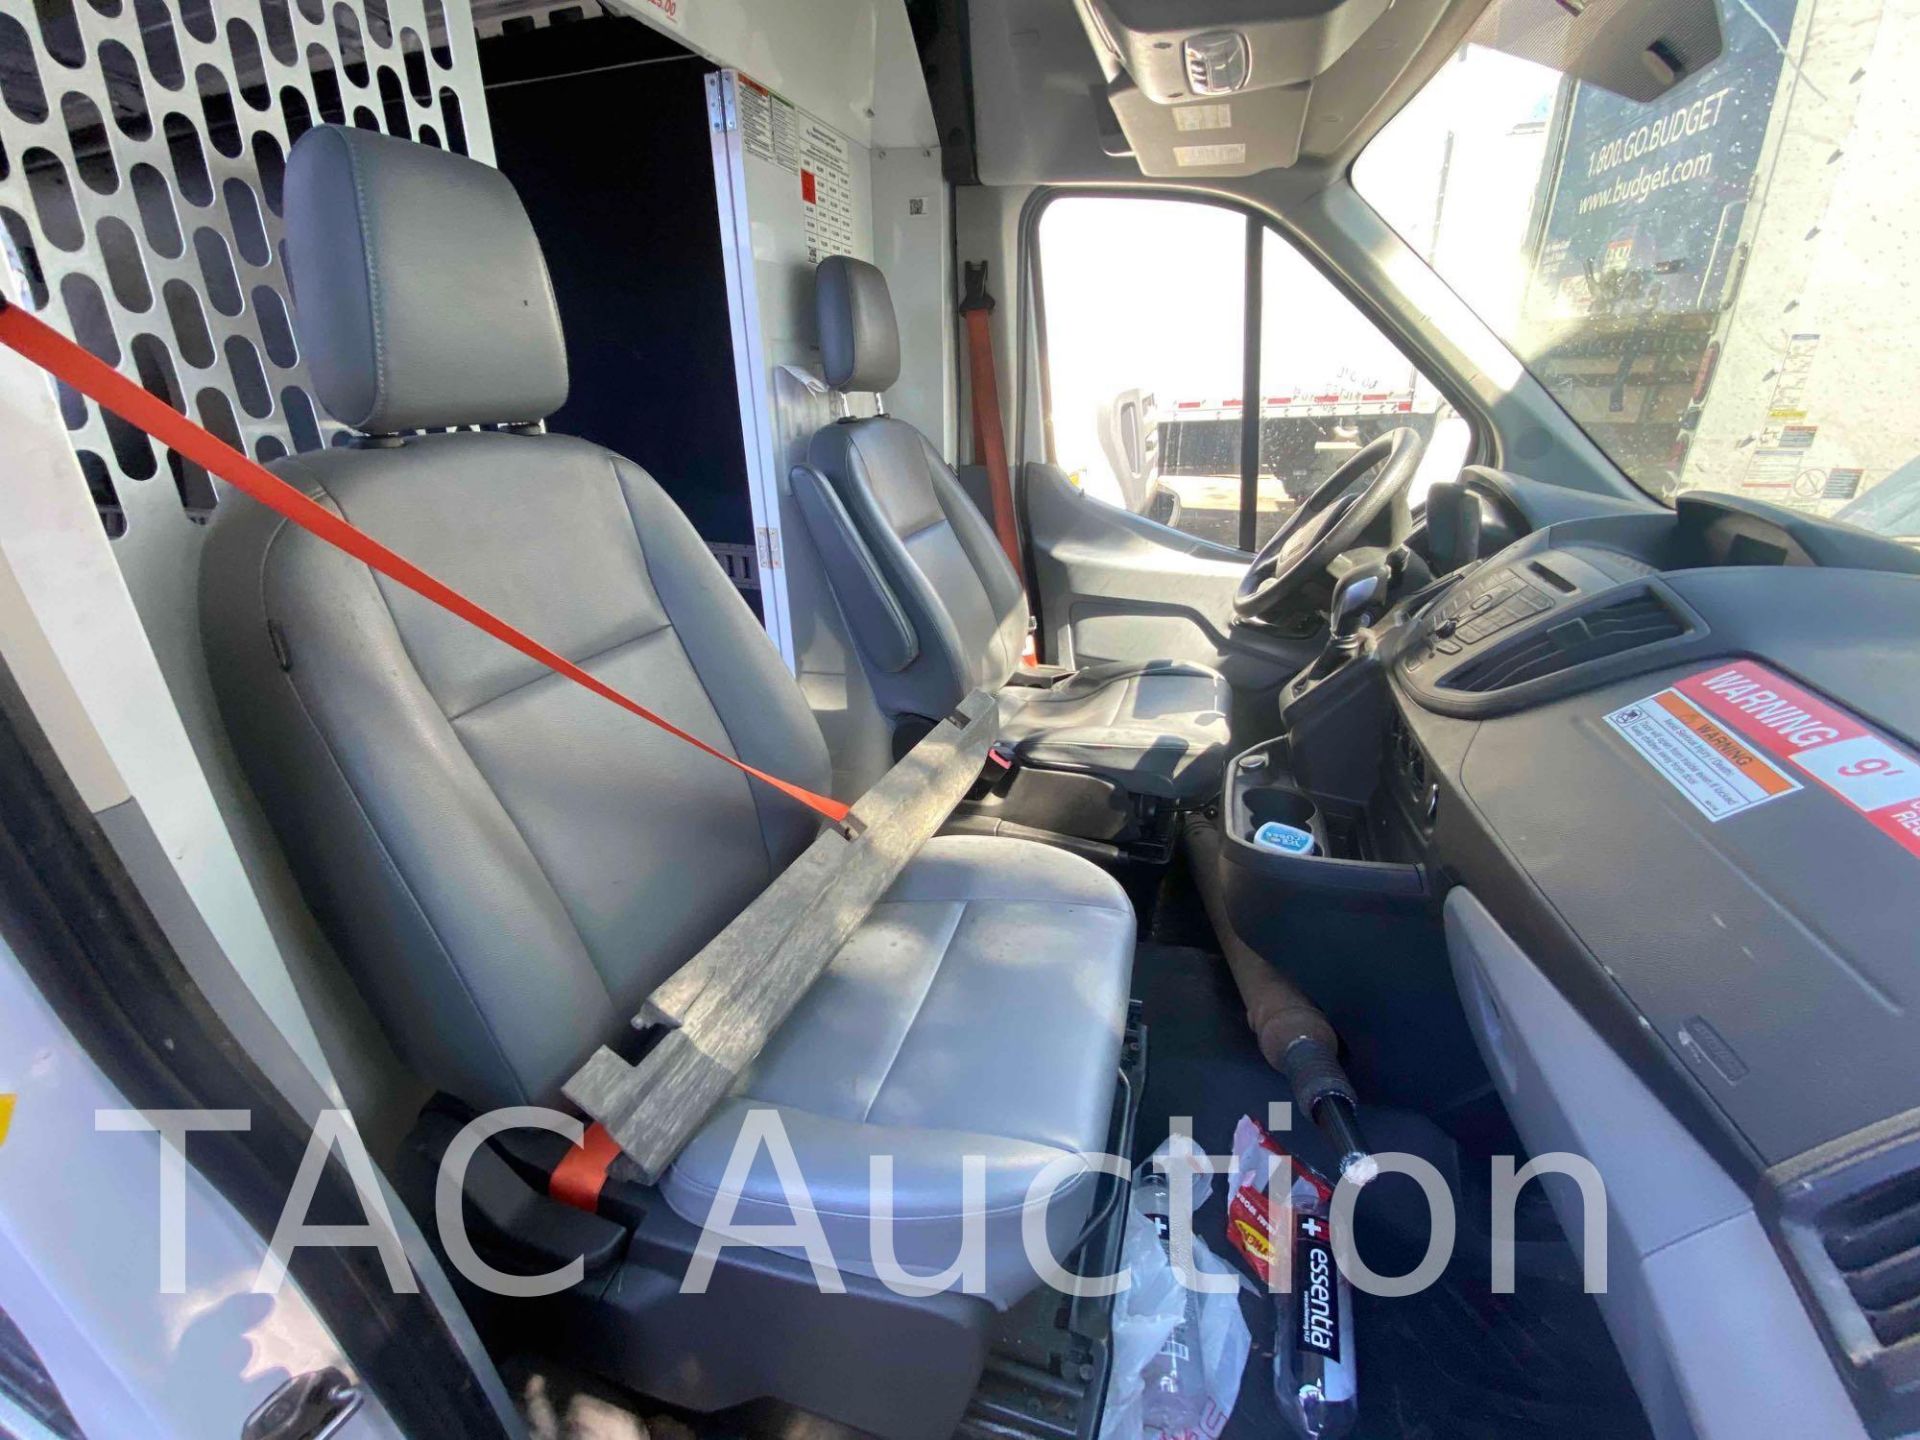 2019 Ford Transit 150 Cargo Van - Image 31 of 50